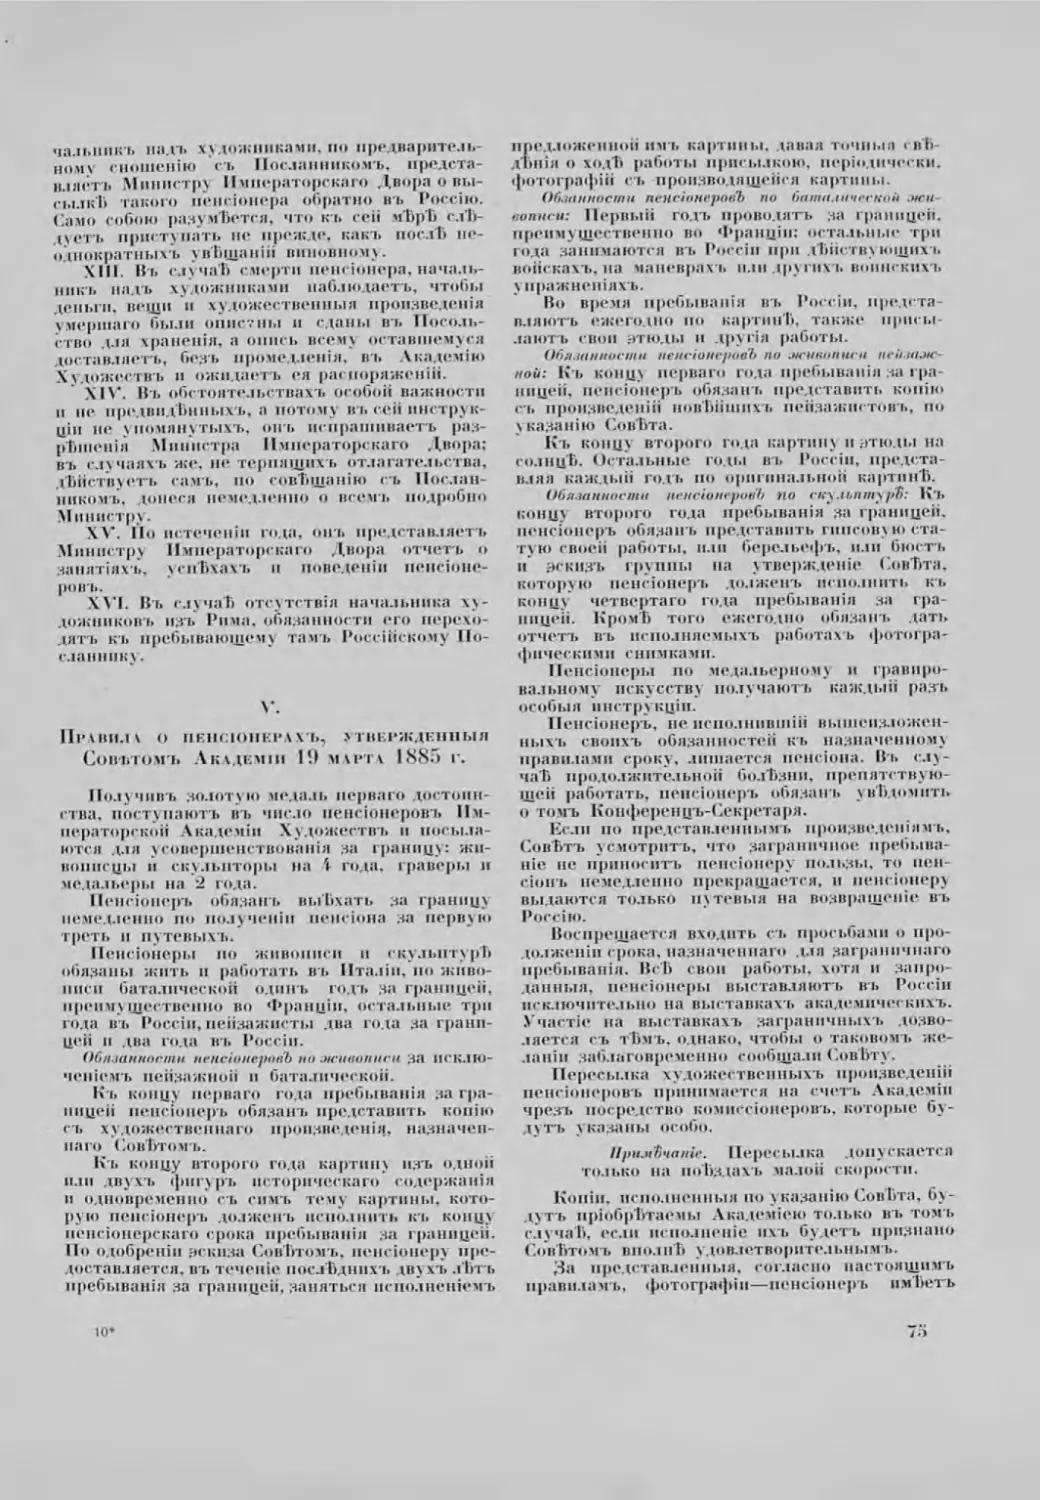 V. Правила о пенсіонерахъ, утвержденныя Советомъ Академіи 19 марта 1885 г.